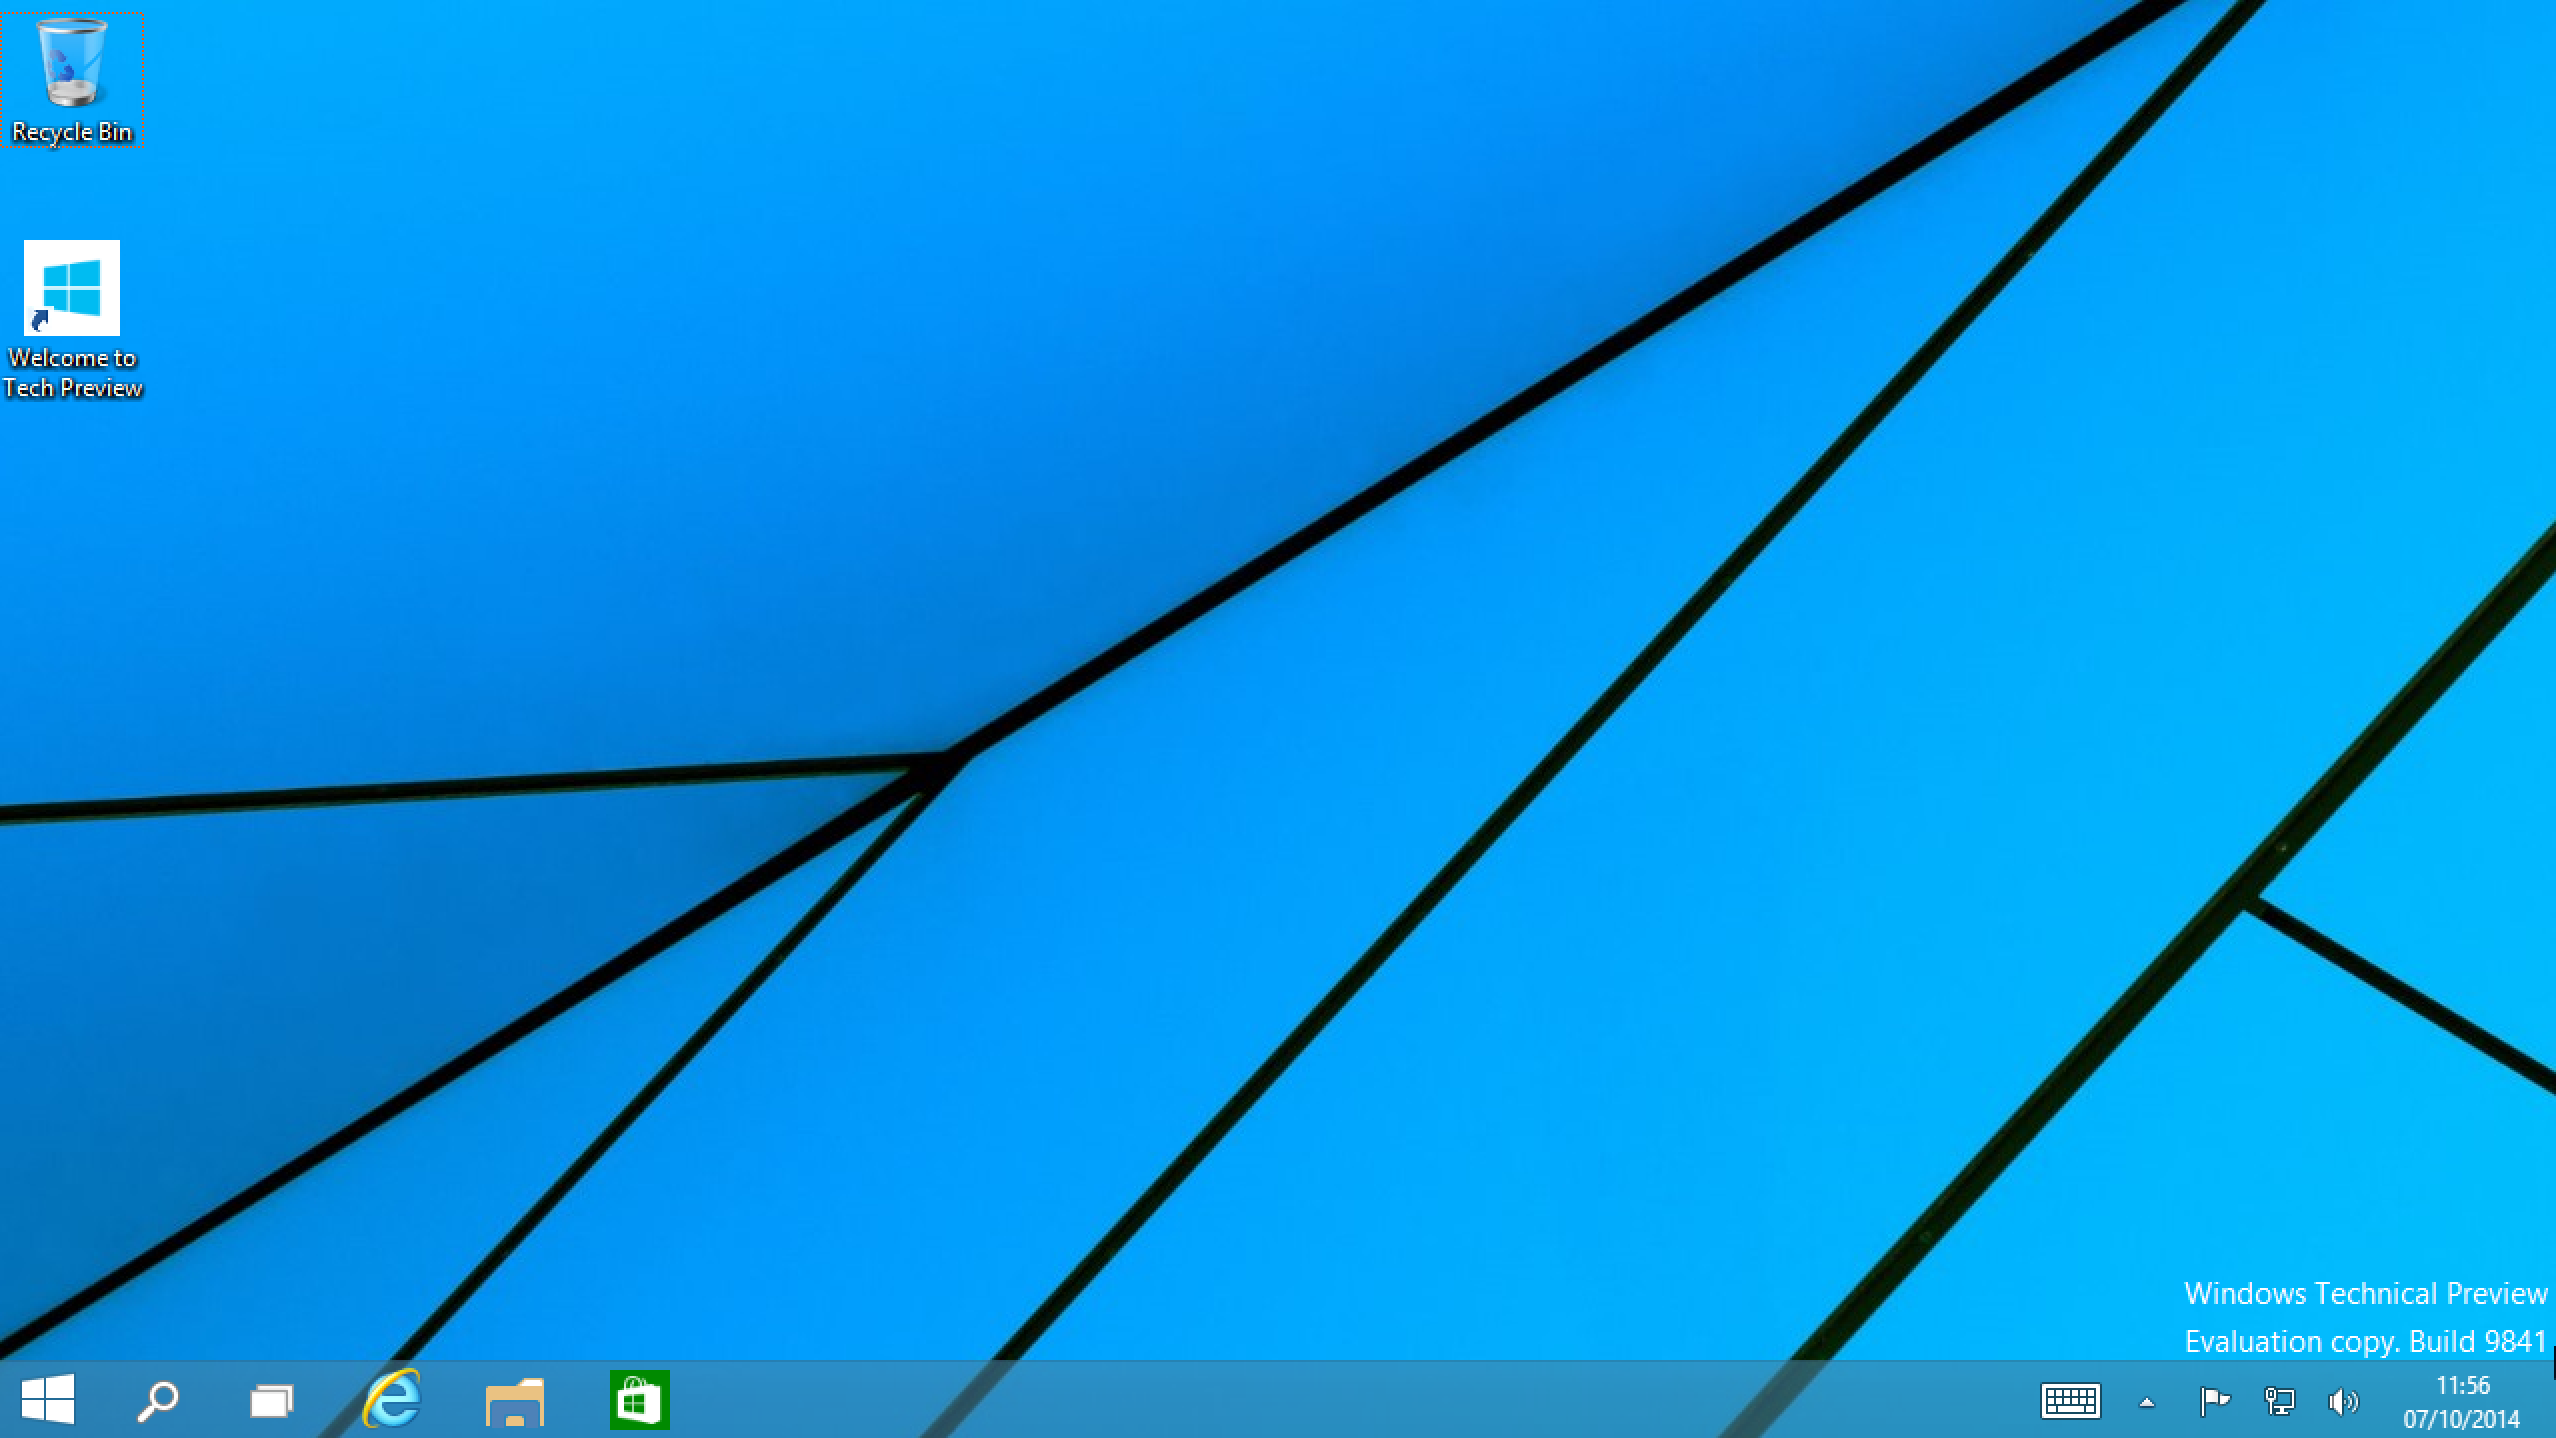 Windows Desktop is Back